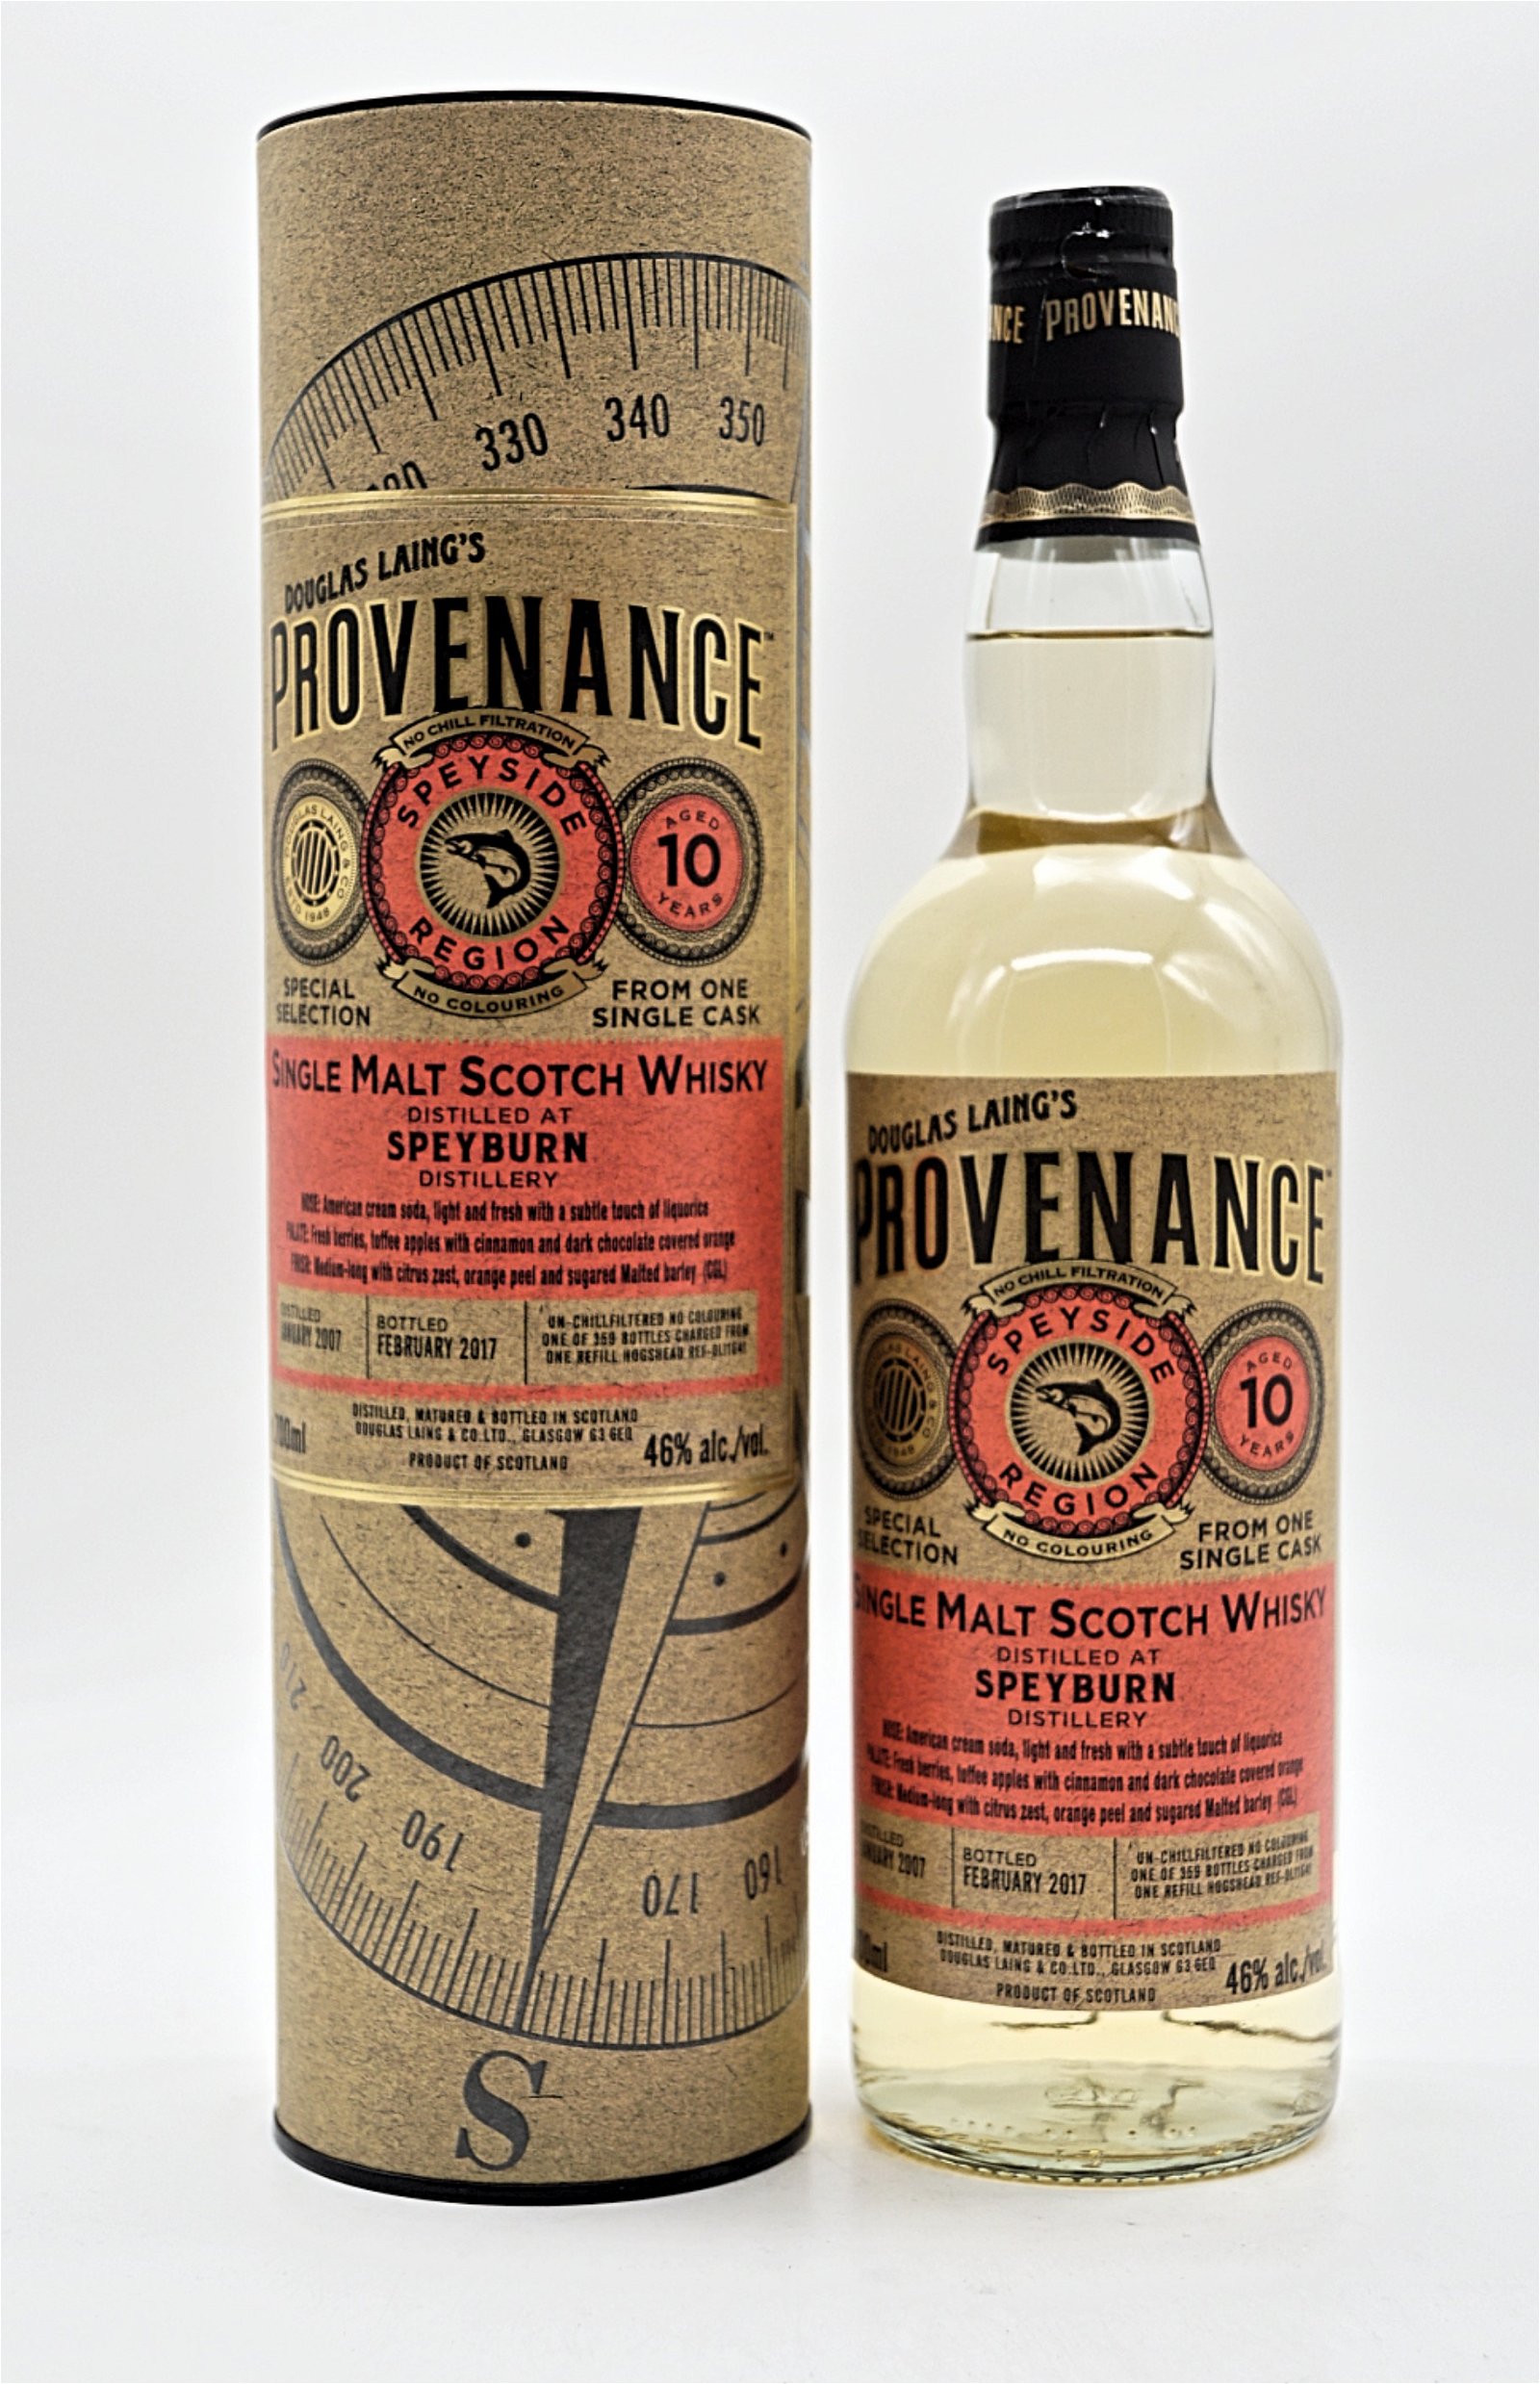 Provenance Speyburn Distillery 10 Jahre 2007/2017 359 Fl. Single Cask Single Malt Scotch Whisky